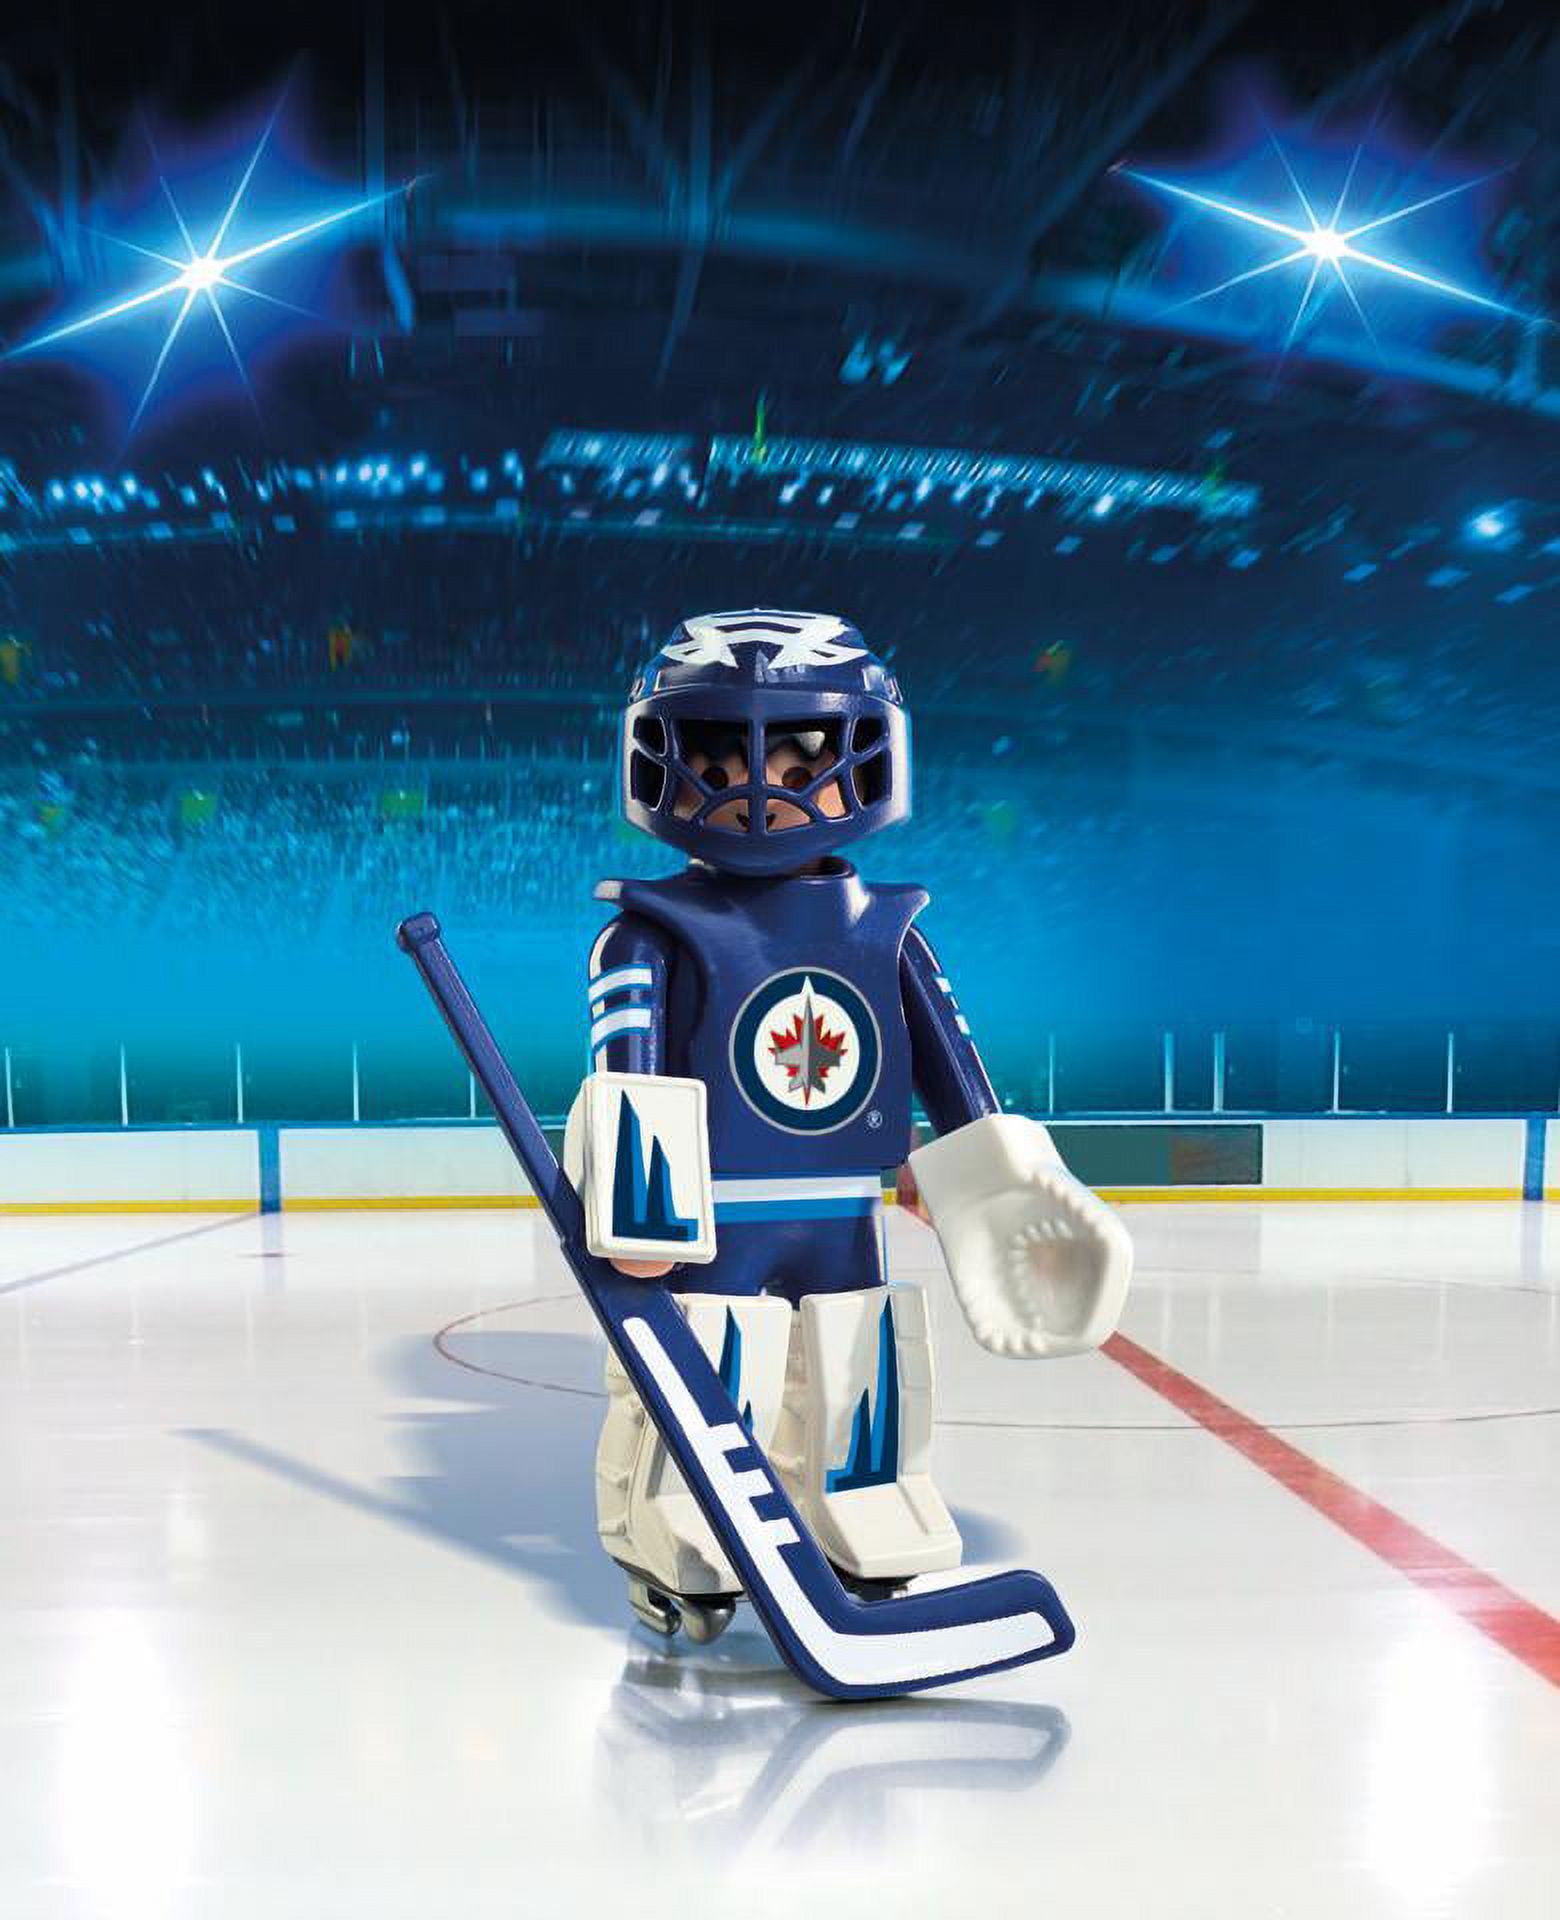 PLAYMOBIL NHL Winnipeg Jets Goalie Figure - image 2 of 3